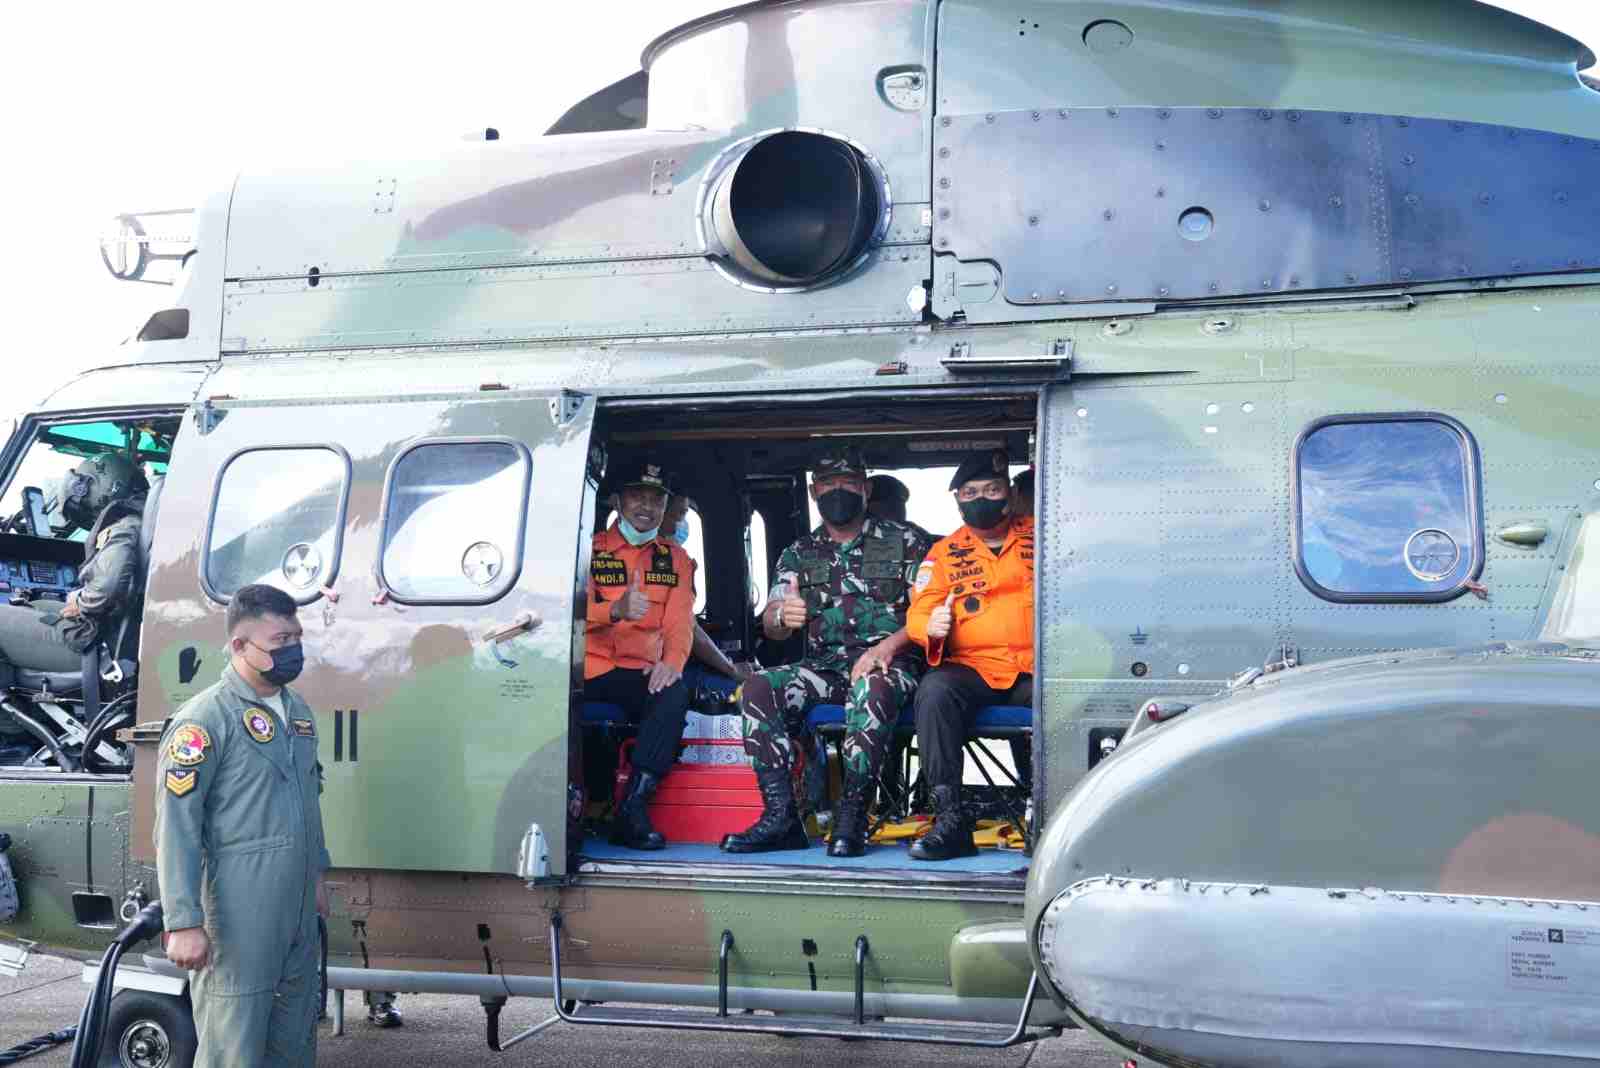 Gubernur Sulsel Pantau Pencarian KM Ladang Pertiwi dengan Helikopter